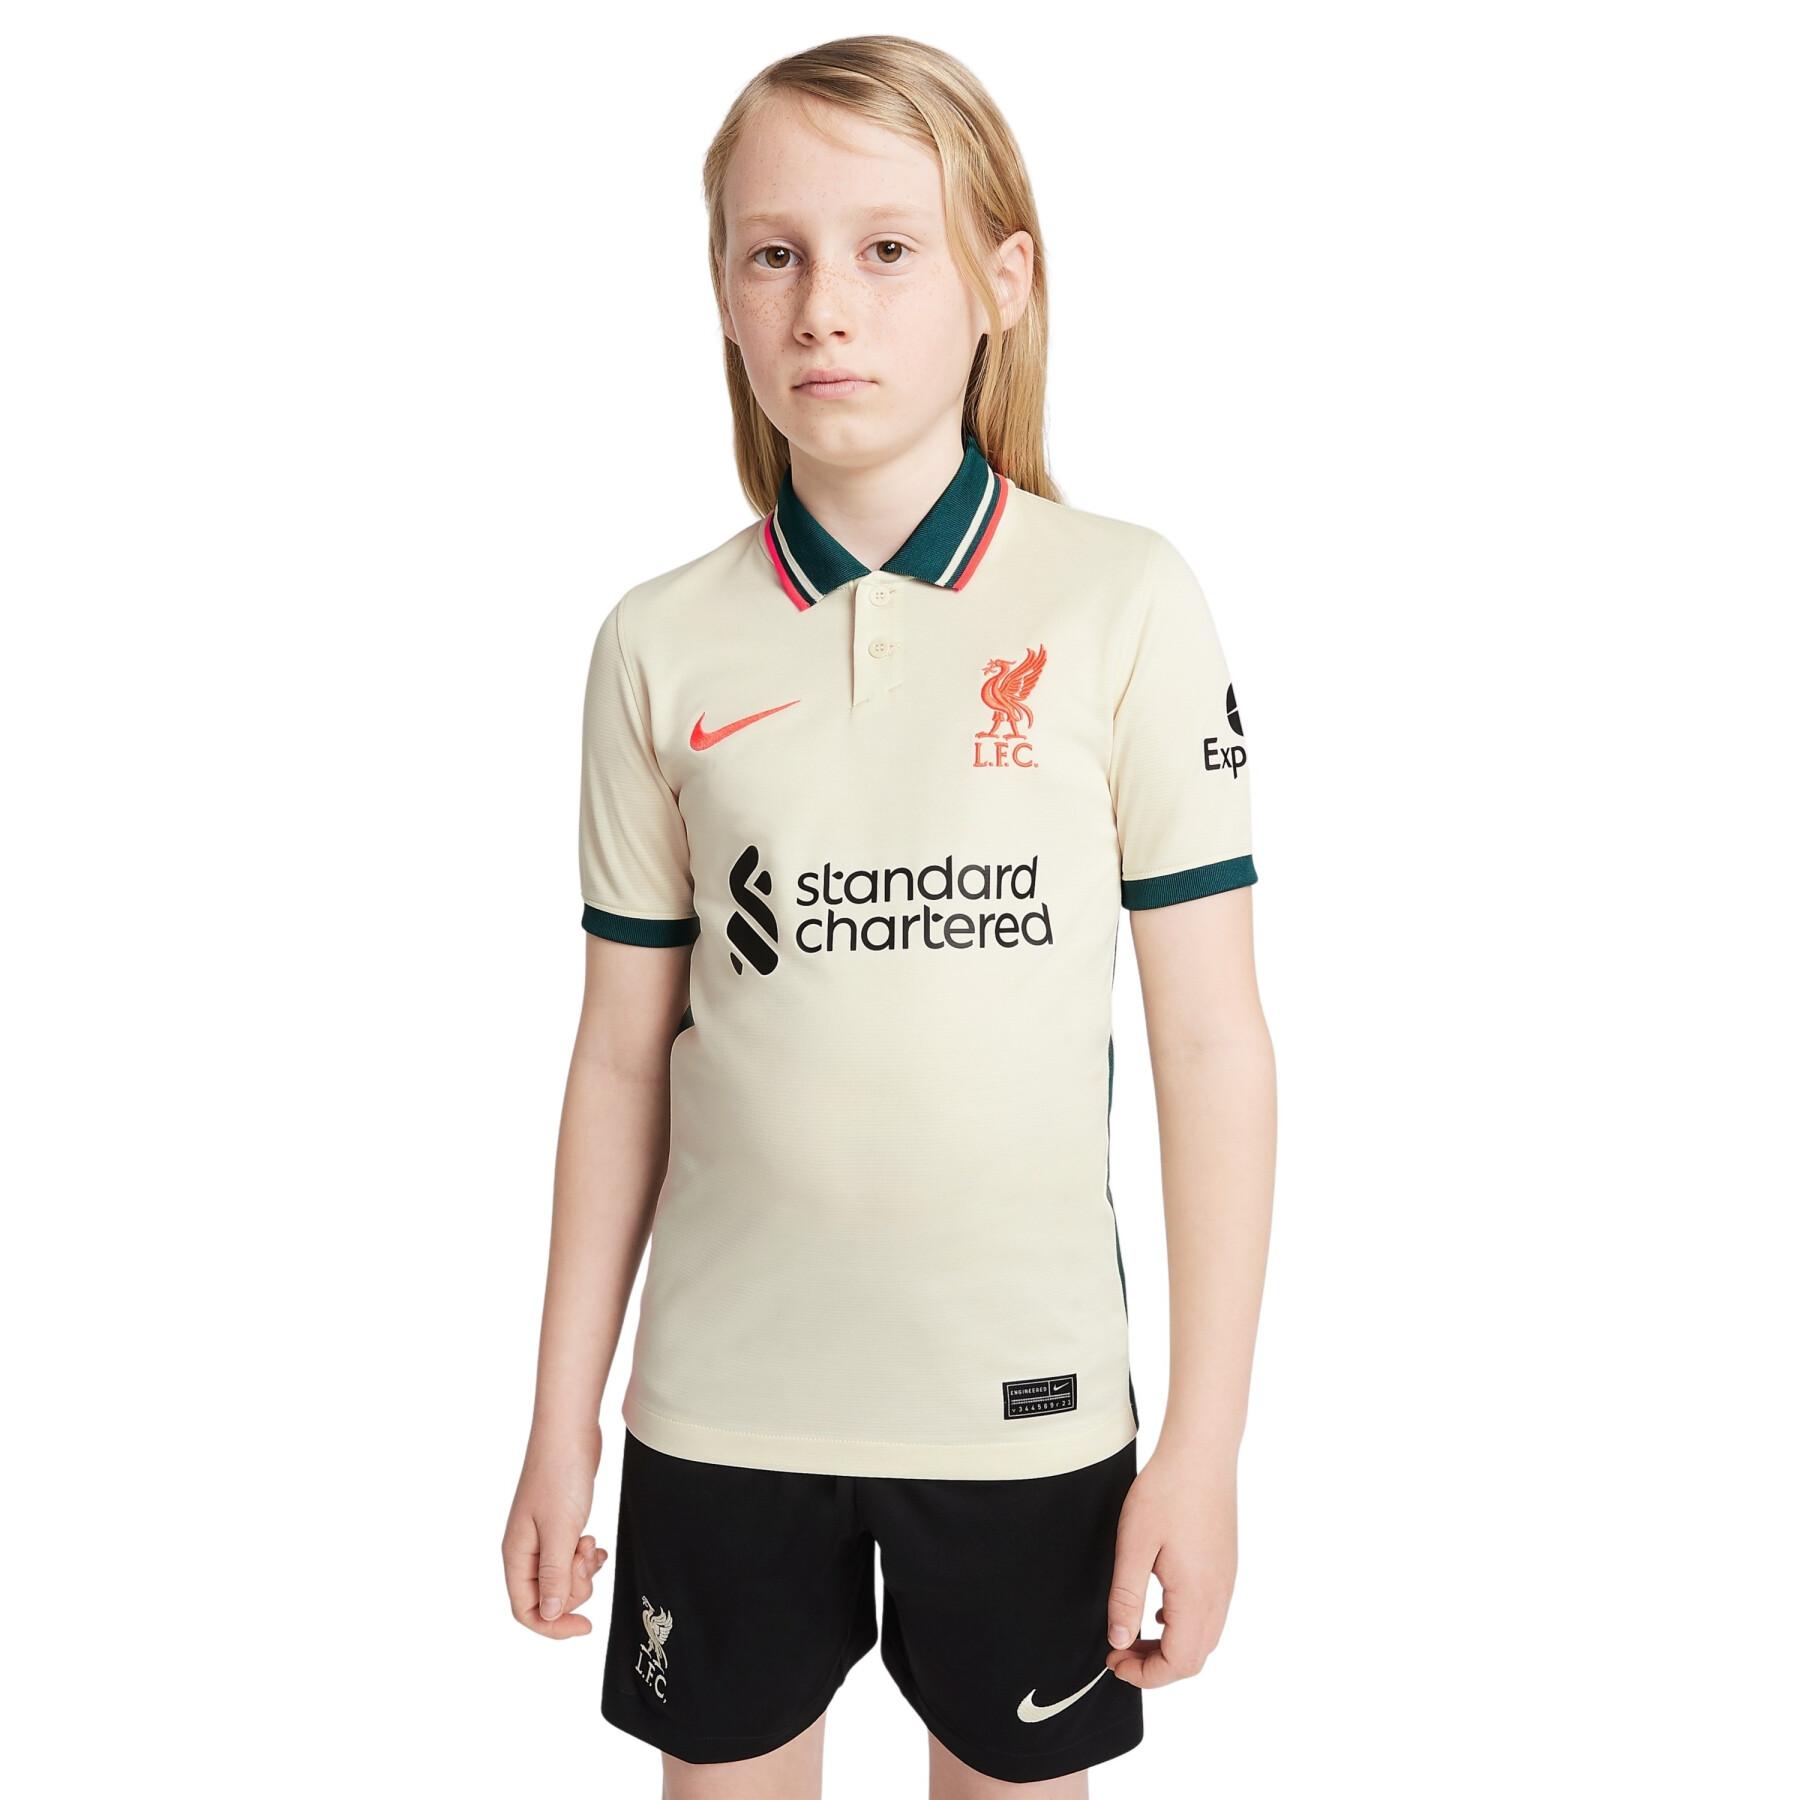 Children's outdoor jersey Liverpool FC 2021/22